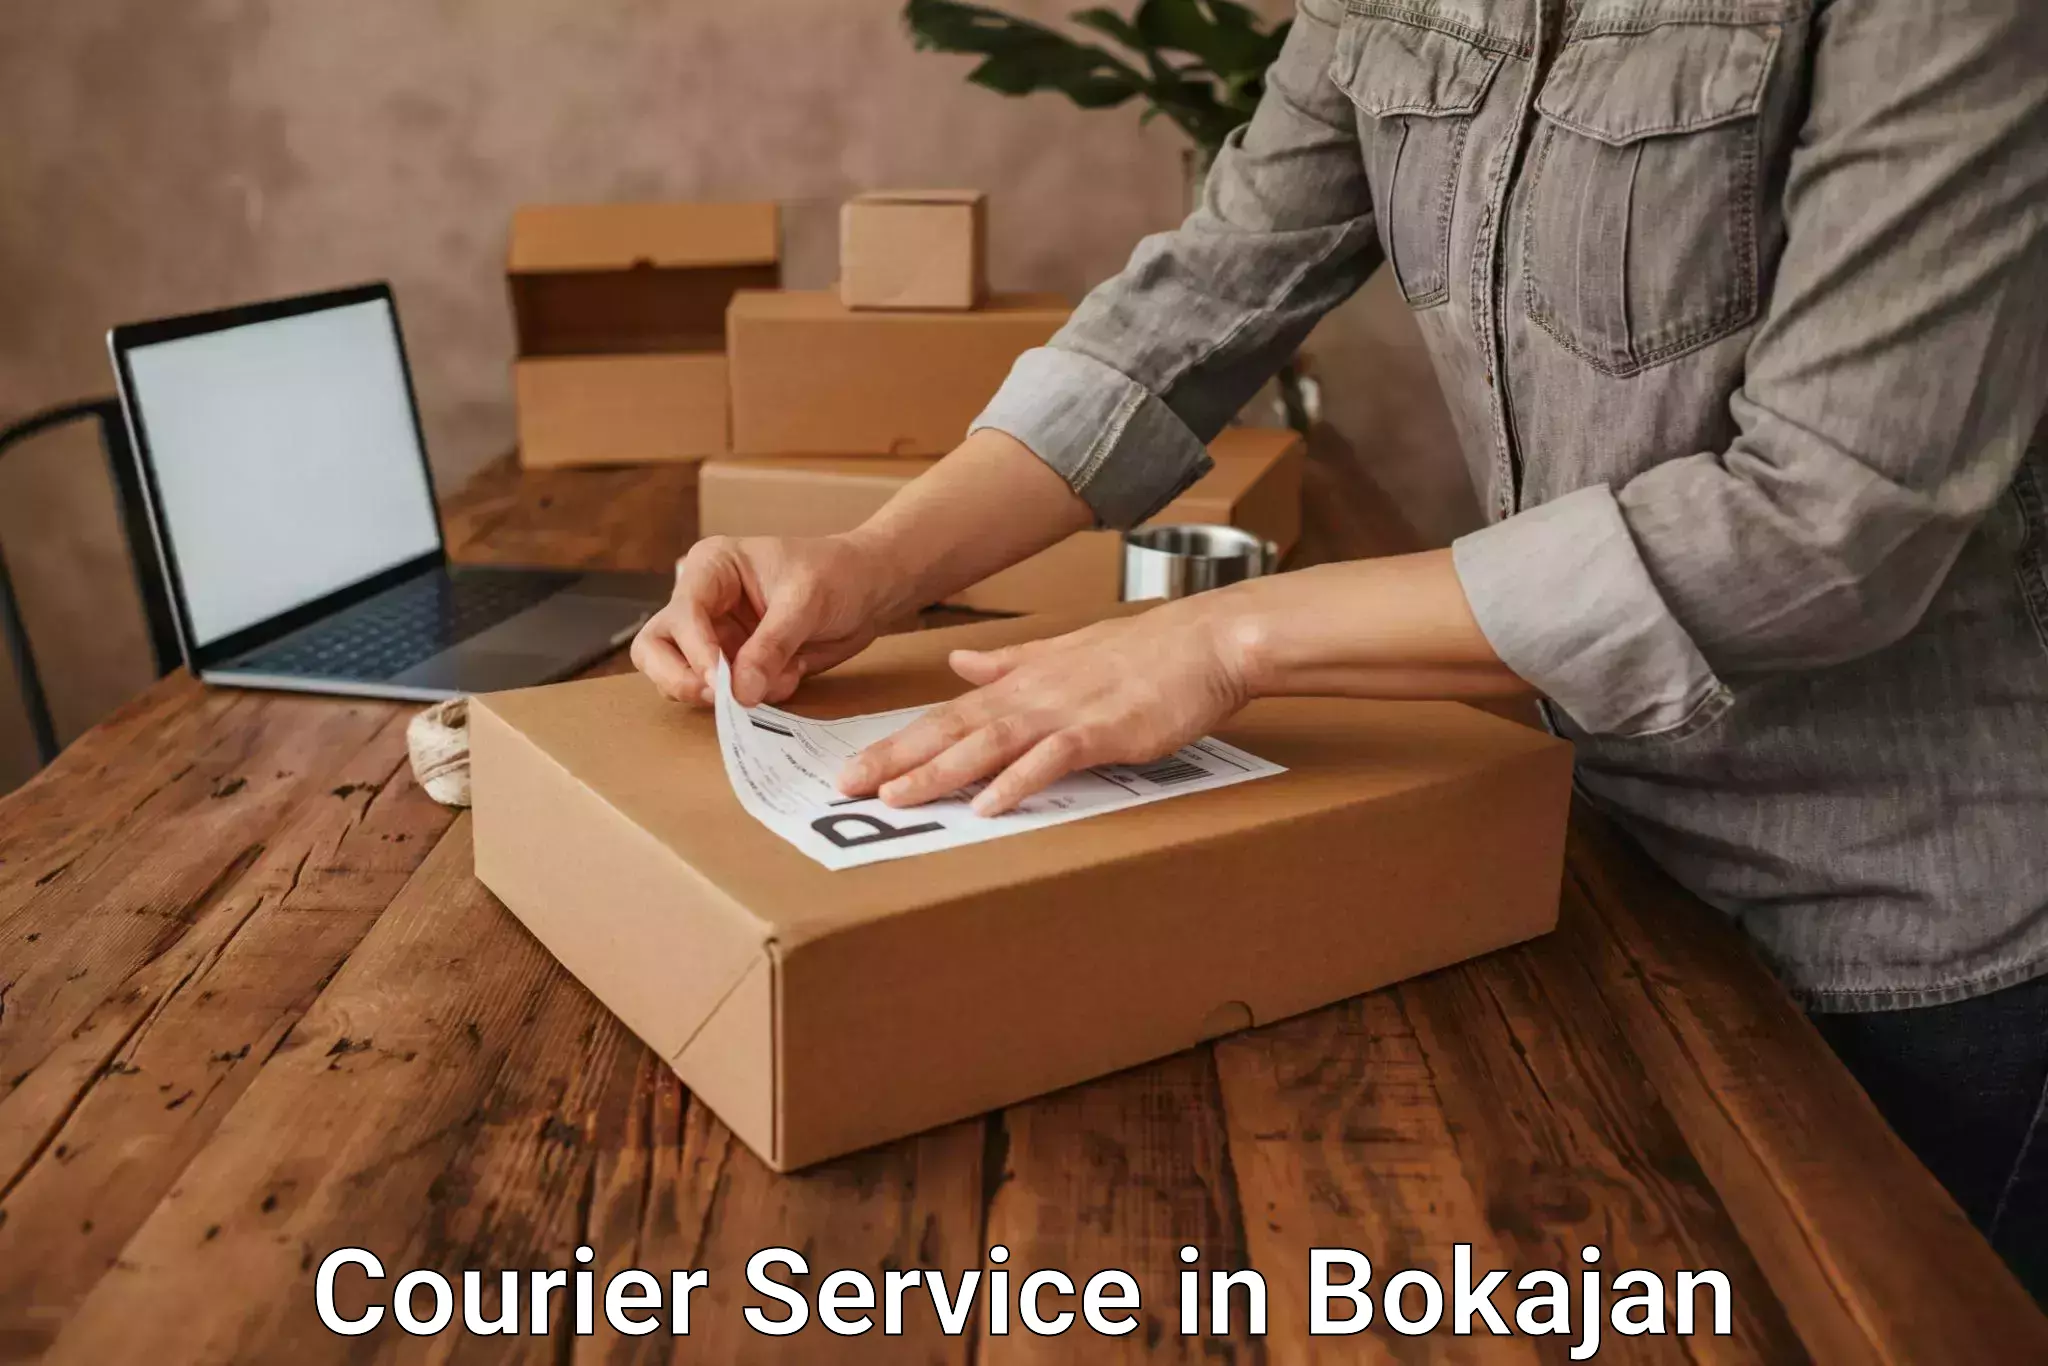 Courier service partnerships in Bokajan